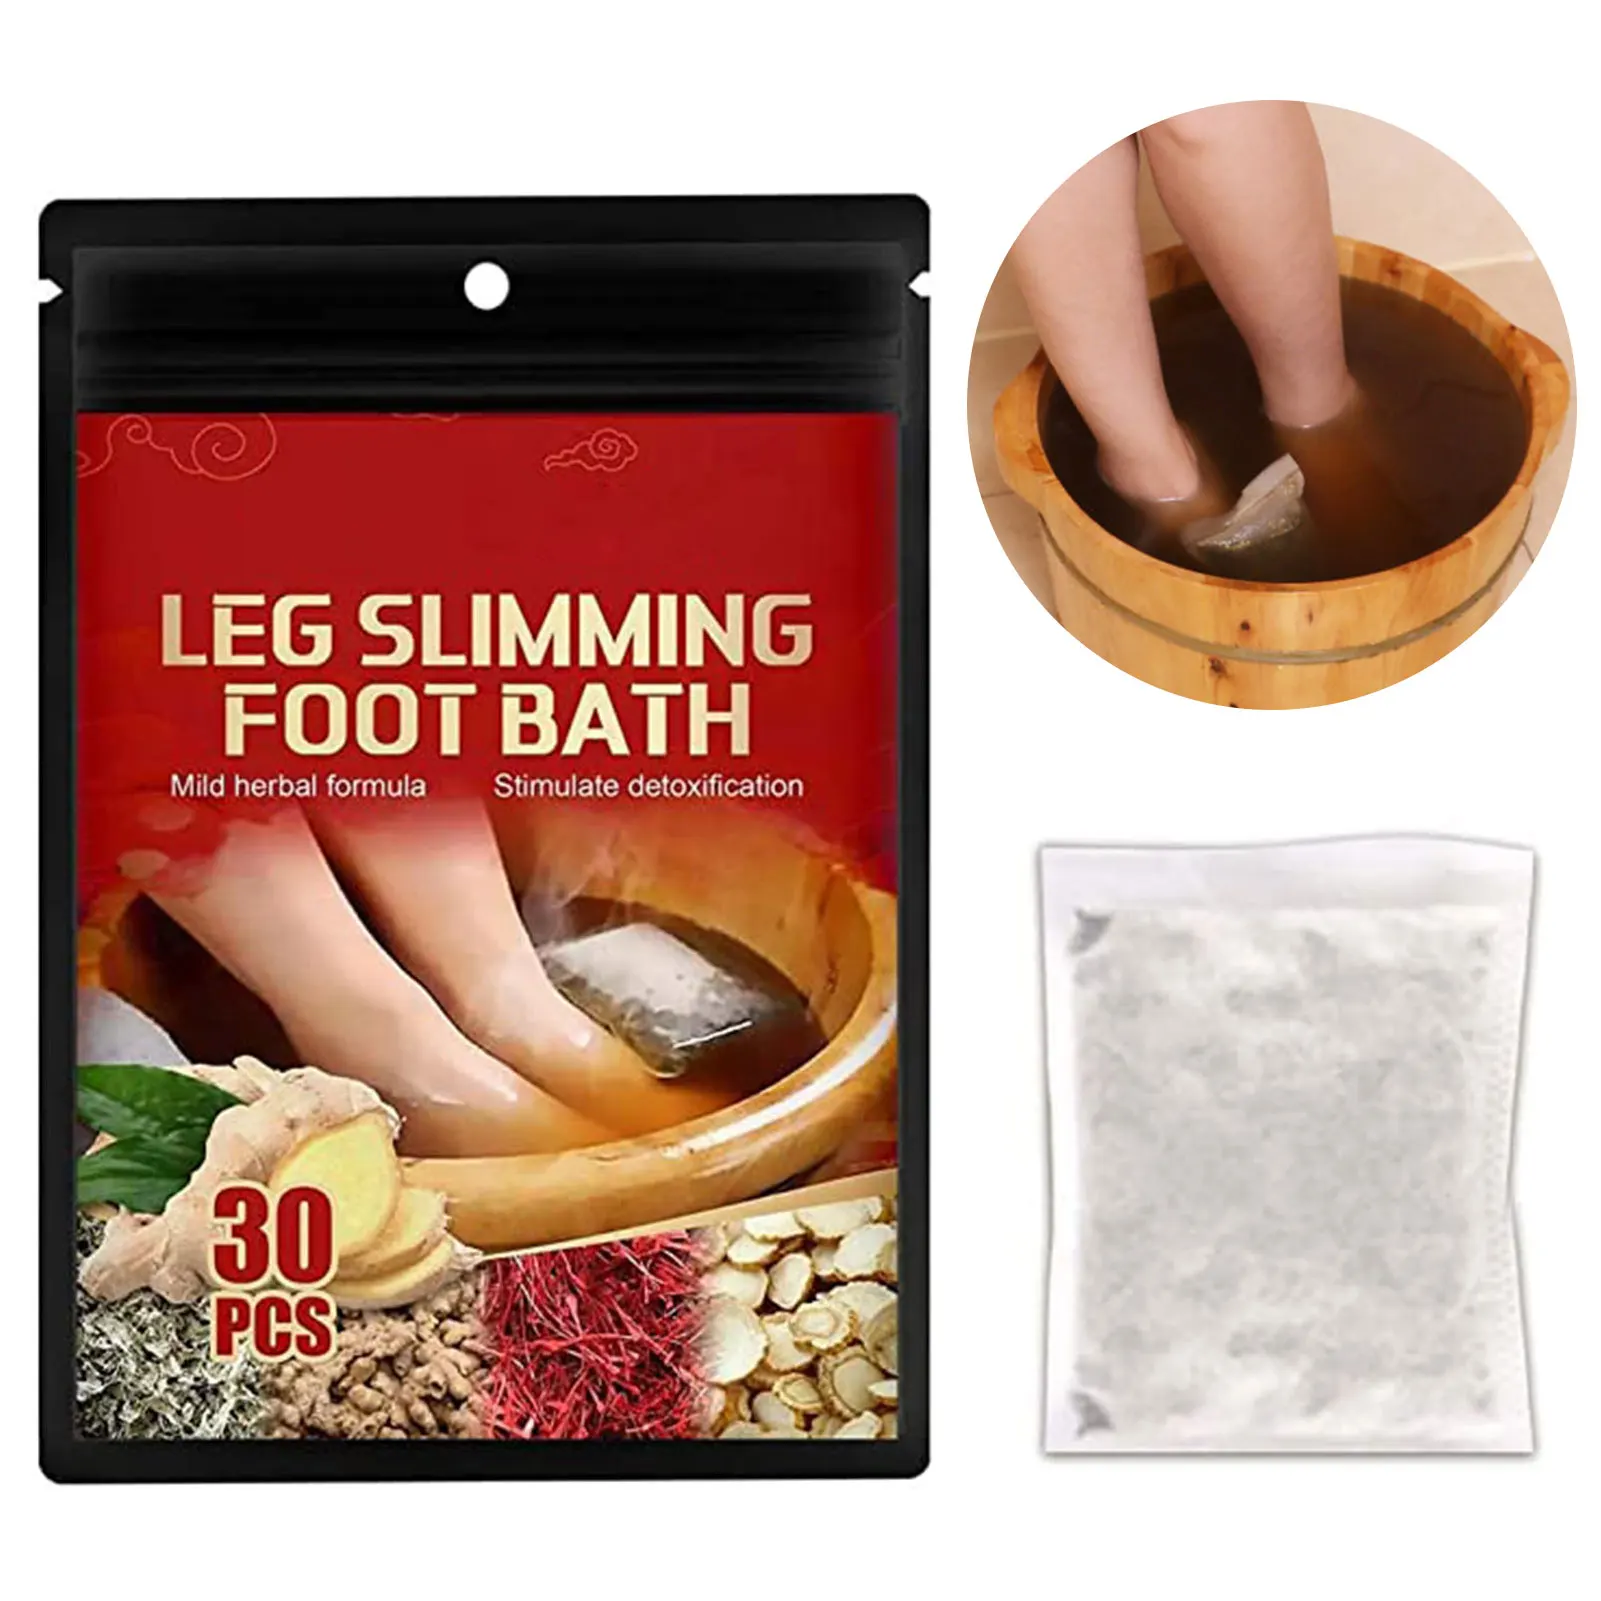 

Turmeric Lymphatic Foot Soak Natural Ginger Foot Bath Leg Slimming Foot Bath Ginger Foot Soak Medicine Bag For Foot Health Care